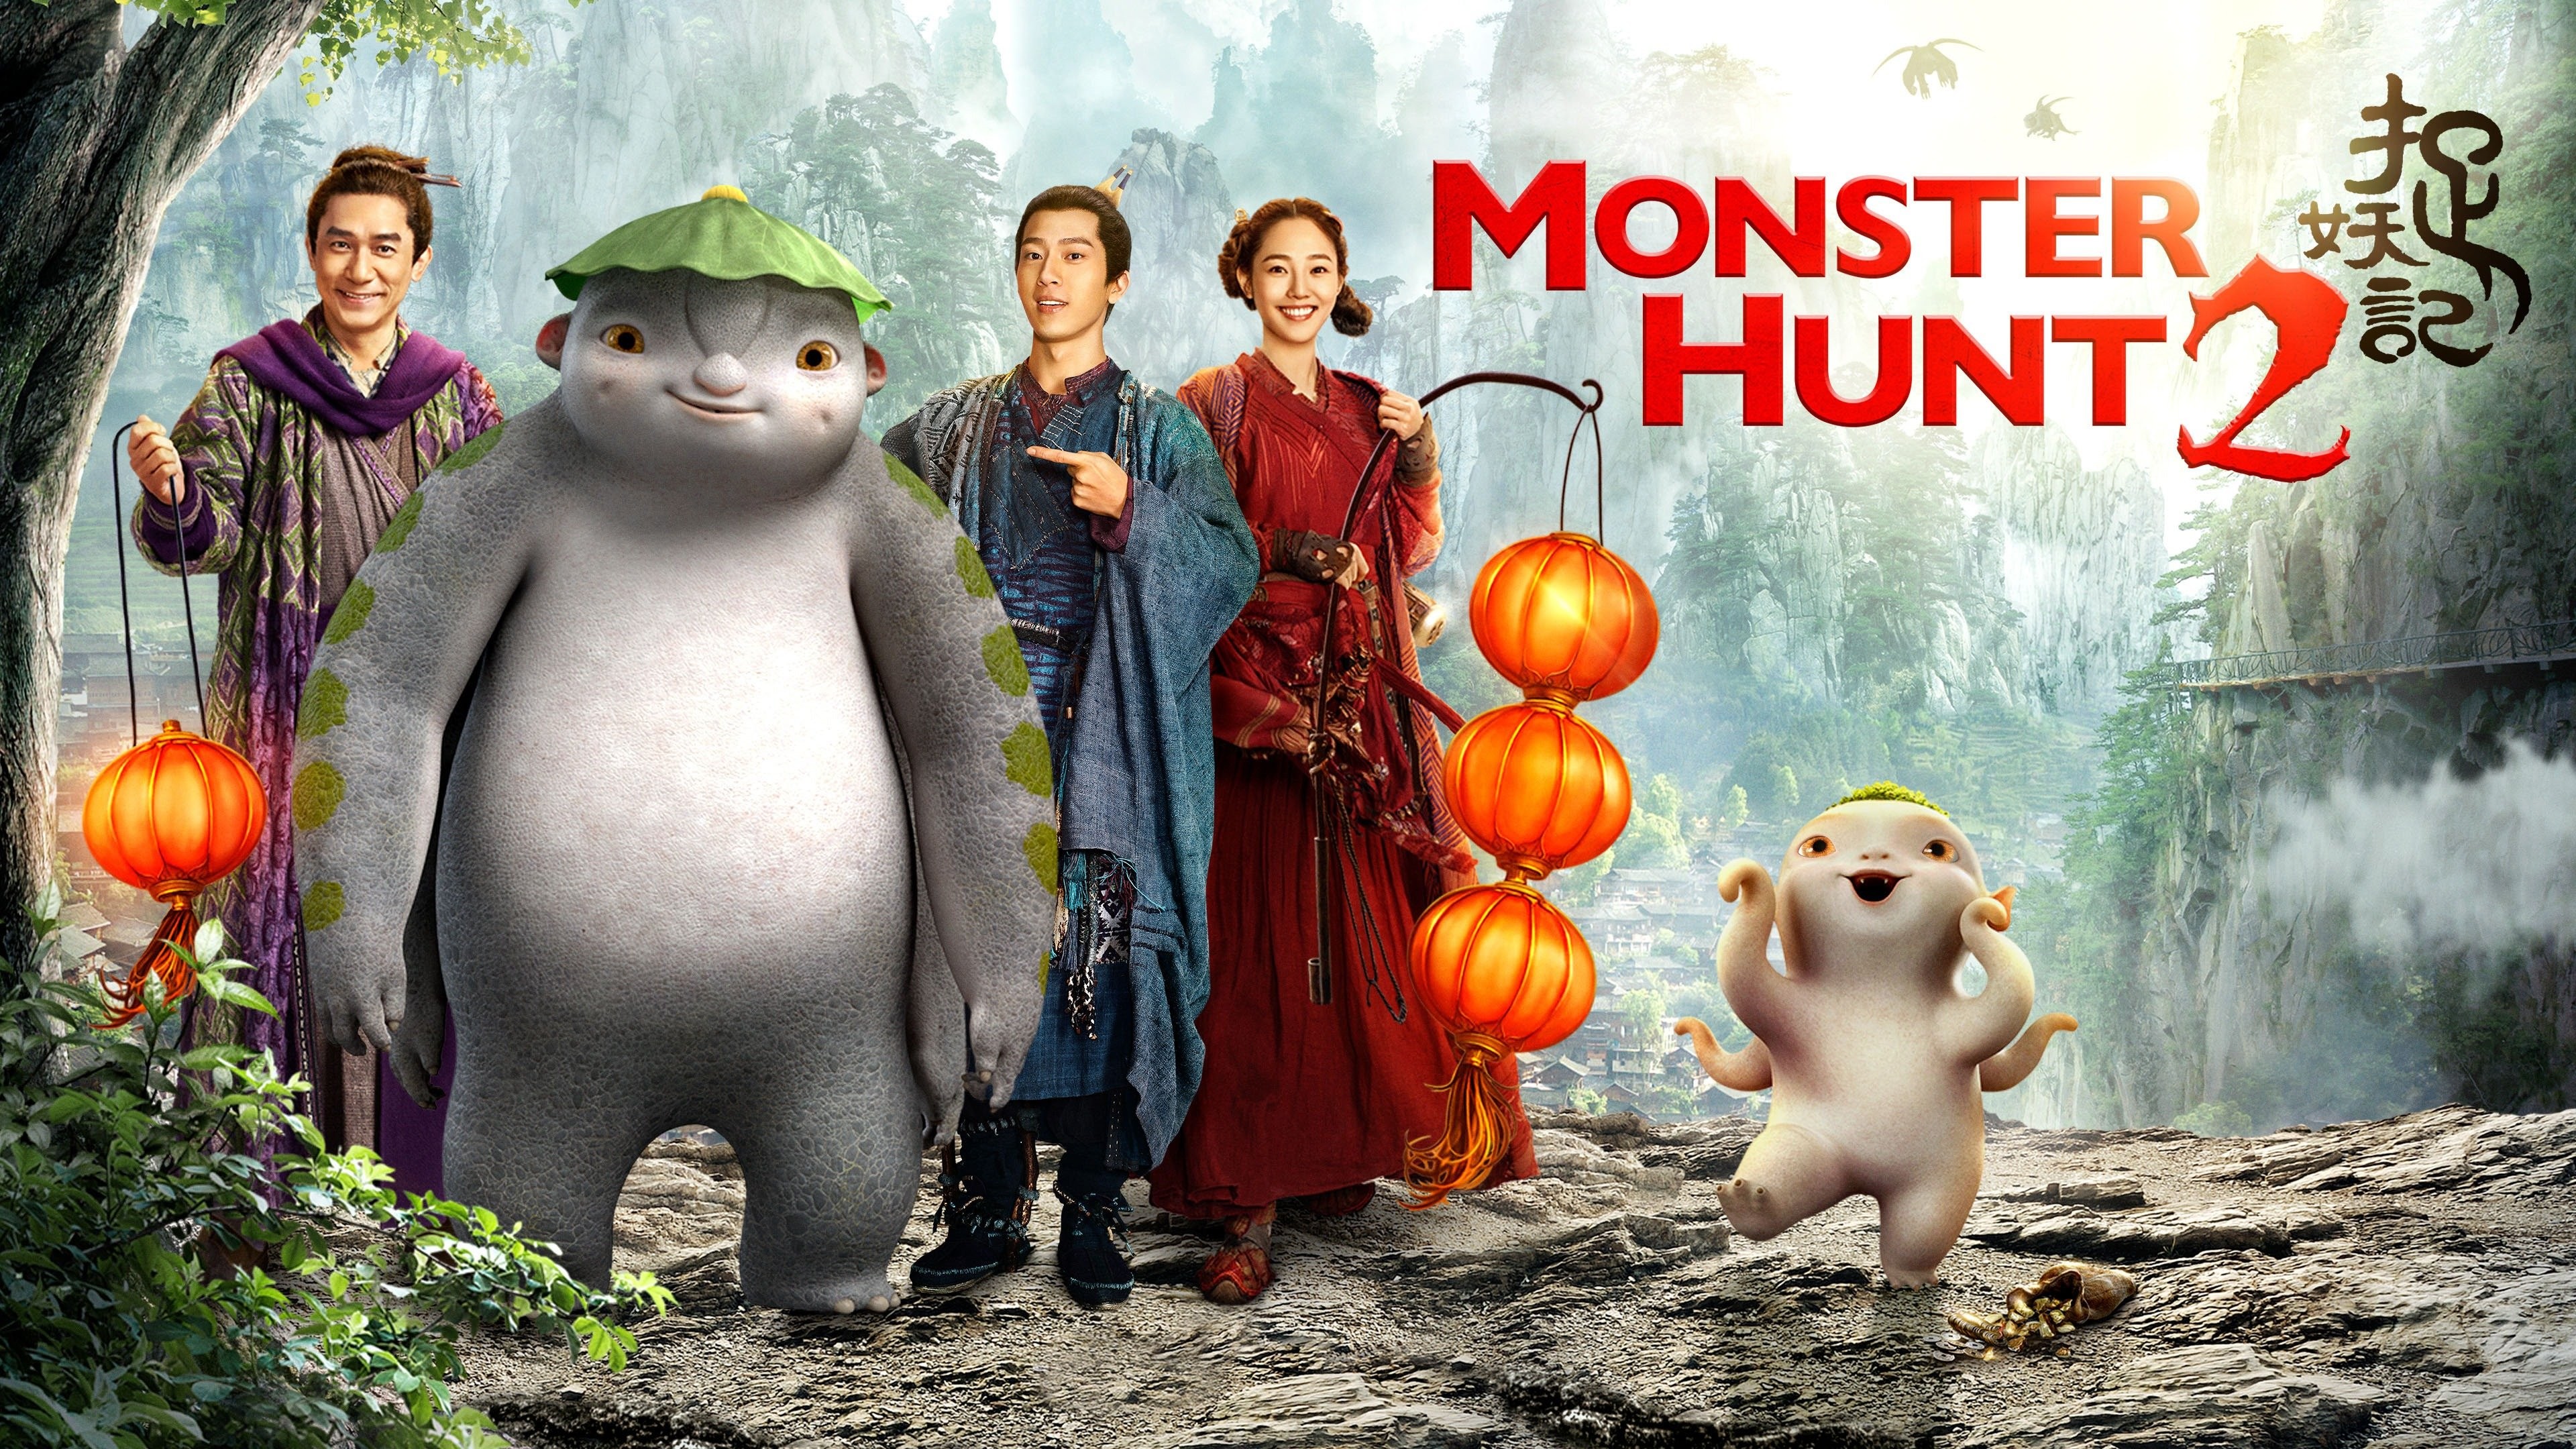 Monster Hunt 2 - Rotten Tomatoes